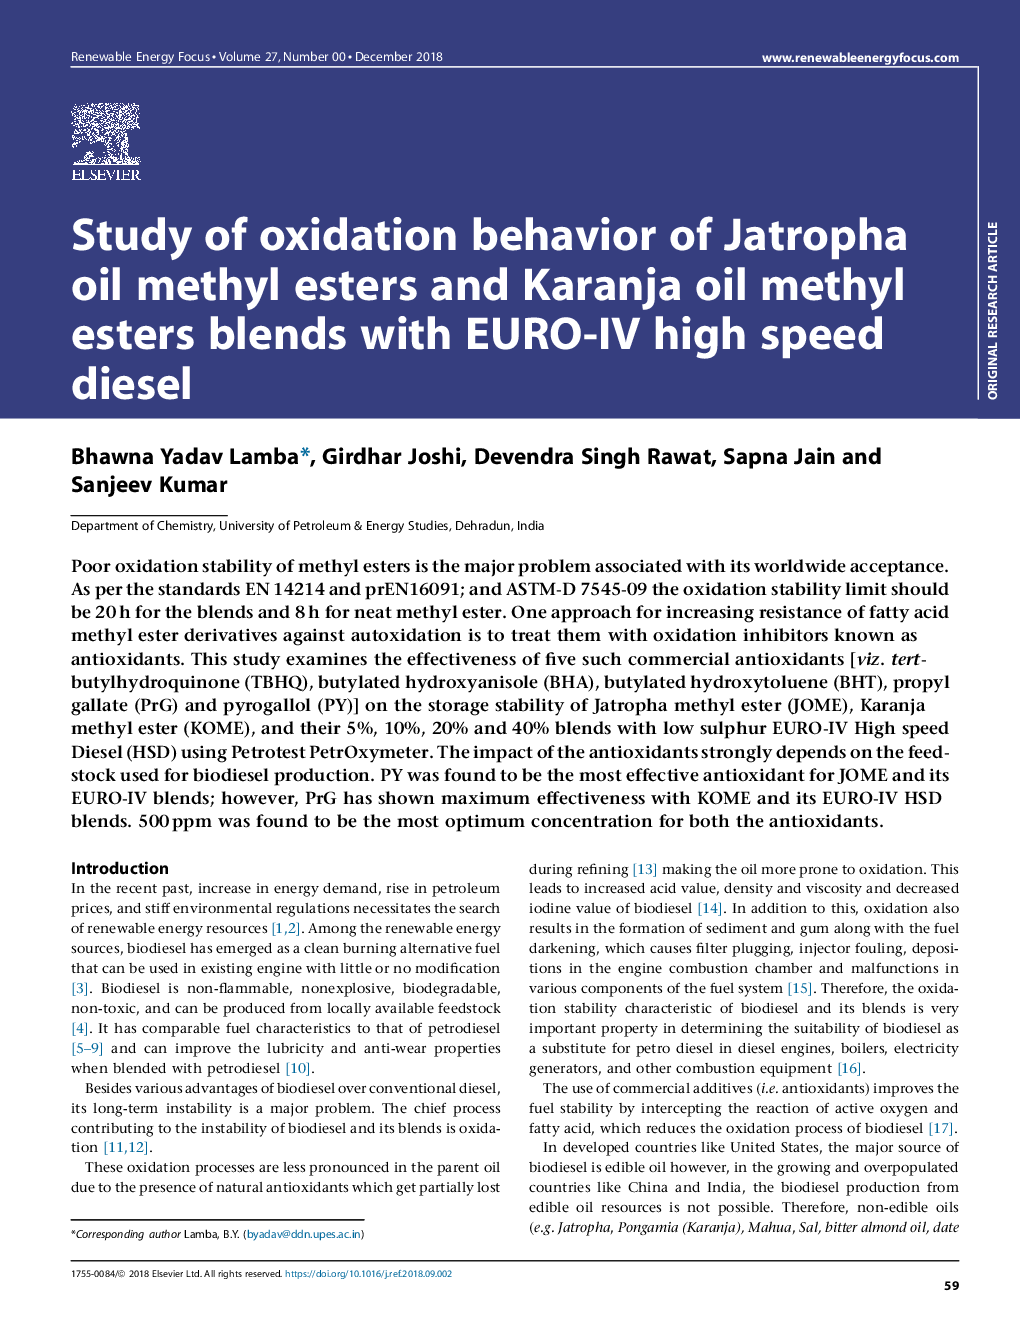 Study of oxidation behavior of Jatropha oil methyl esters and Karanja oil methyl esters blends with EURO-IV high speed diesel